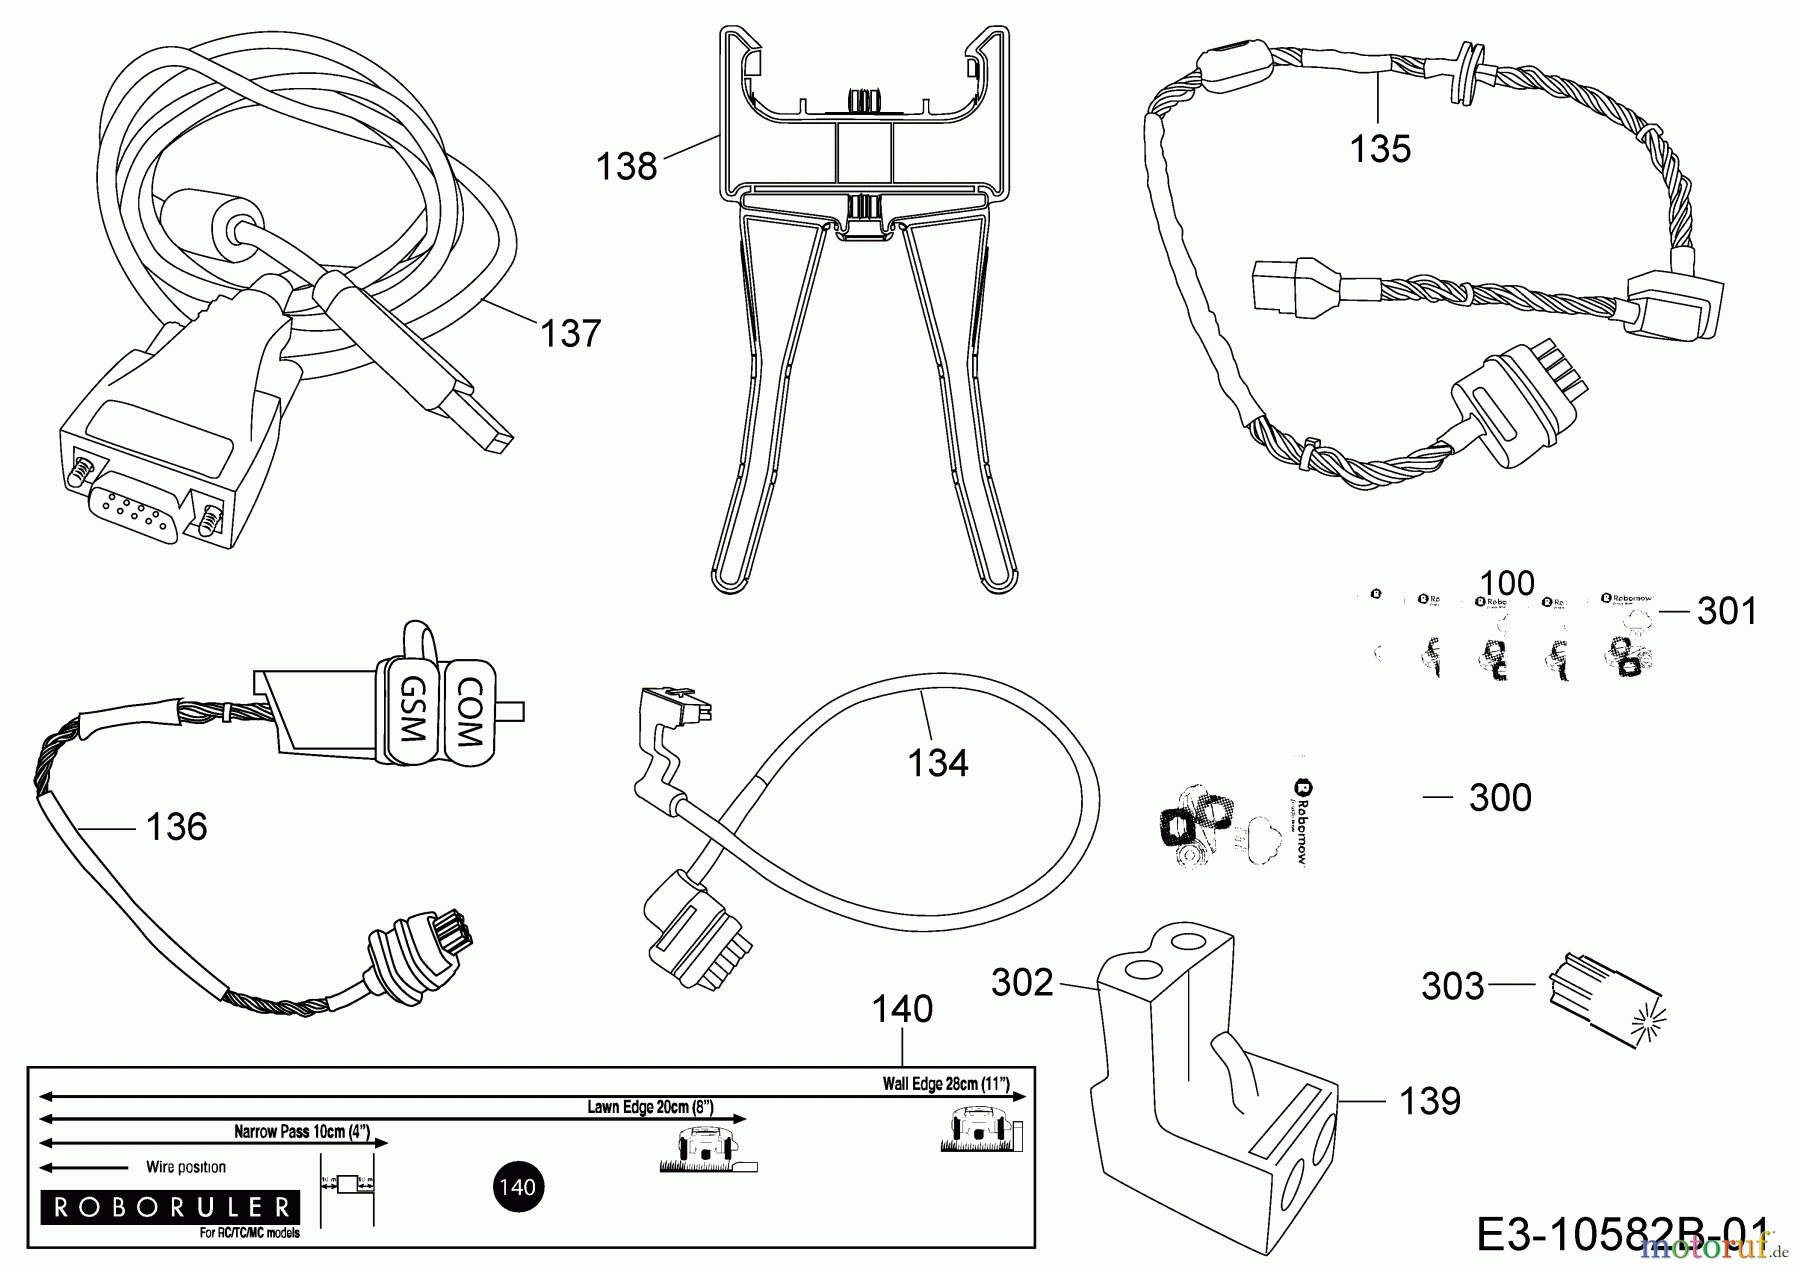  Robomow Mähroboter RC312U (Black) PRD7012YB  (2017) Kabel, Kabelanschluß, Regensensor, Werkzeug